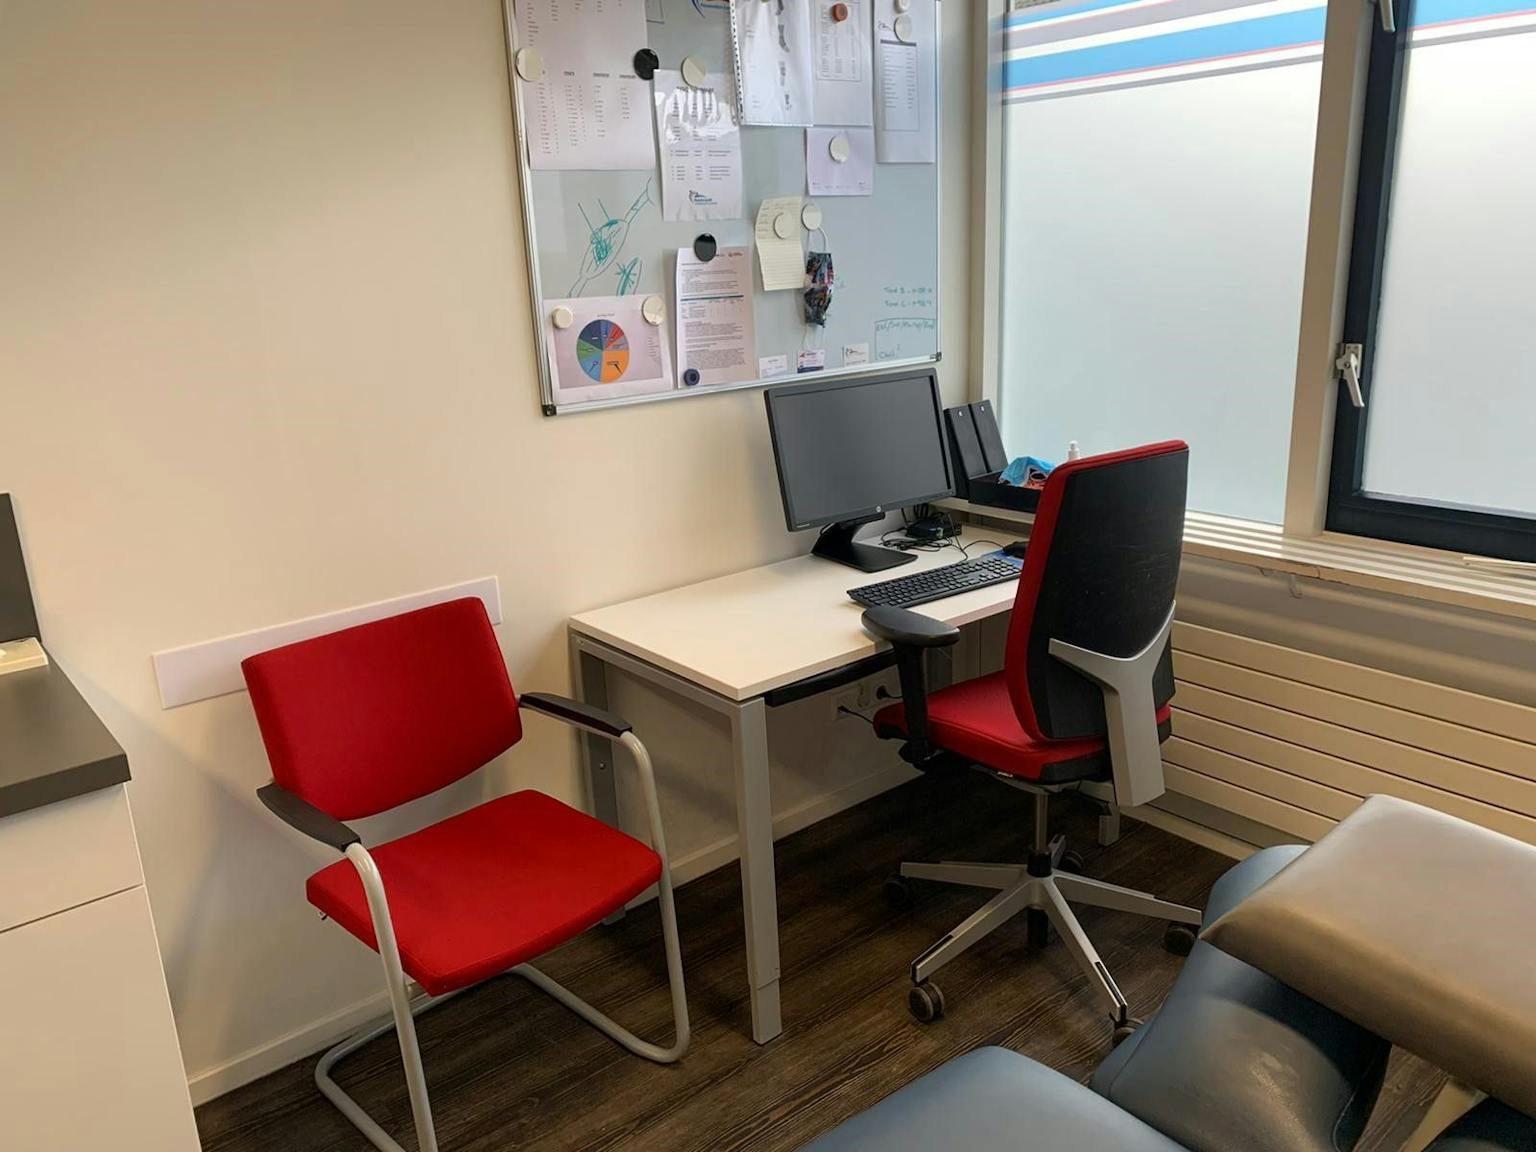 Spreekkamer met daarin een wit bureau, daarachter een rode bureaustoel en naast deze werkplek staat een rode stoel voor patiënten.